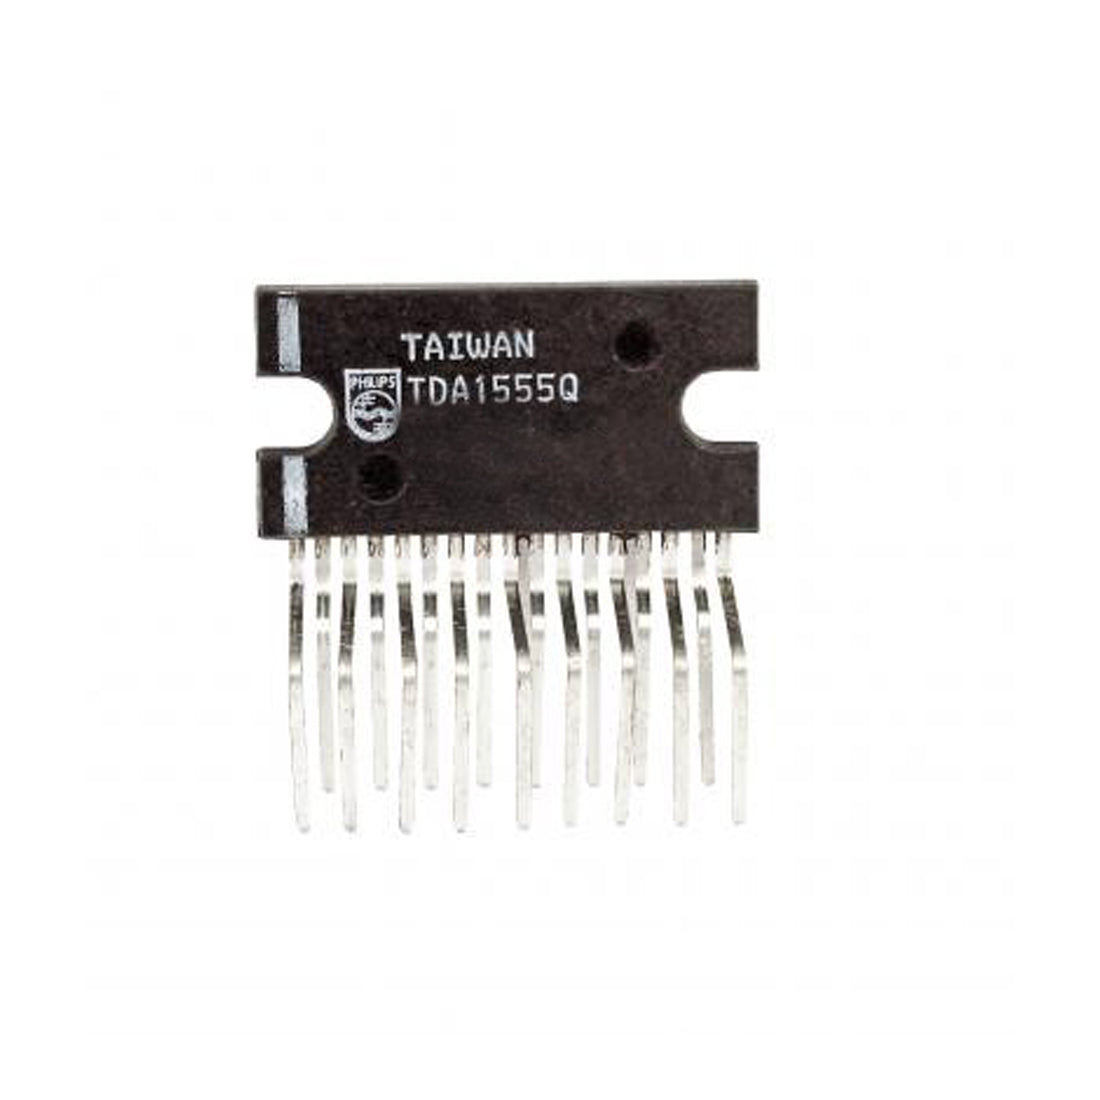 PHILIPS TDA1555Q componente elettronico, circuito integrato, 17 contatti